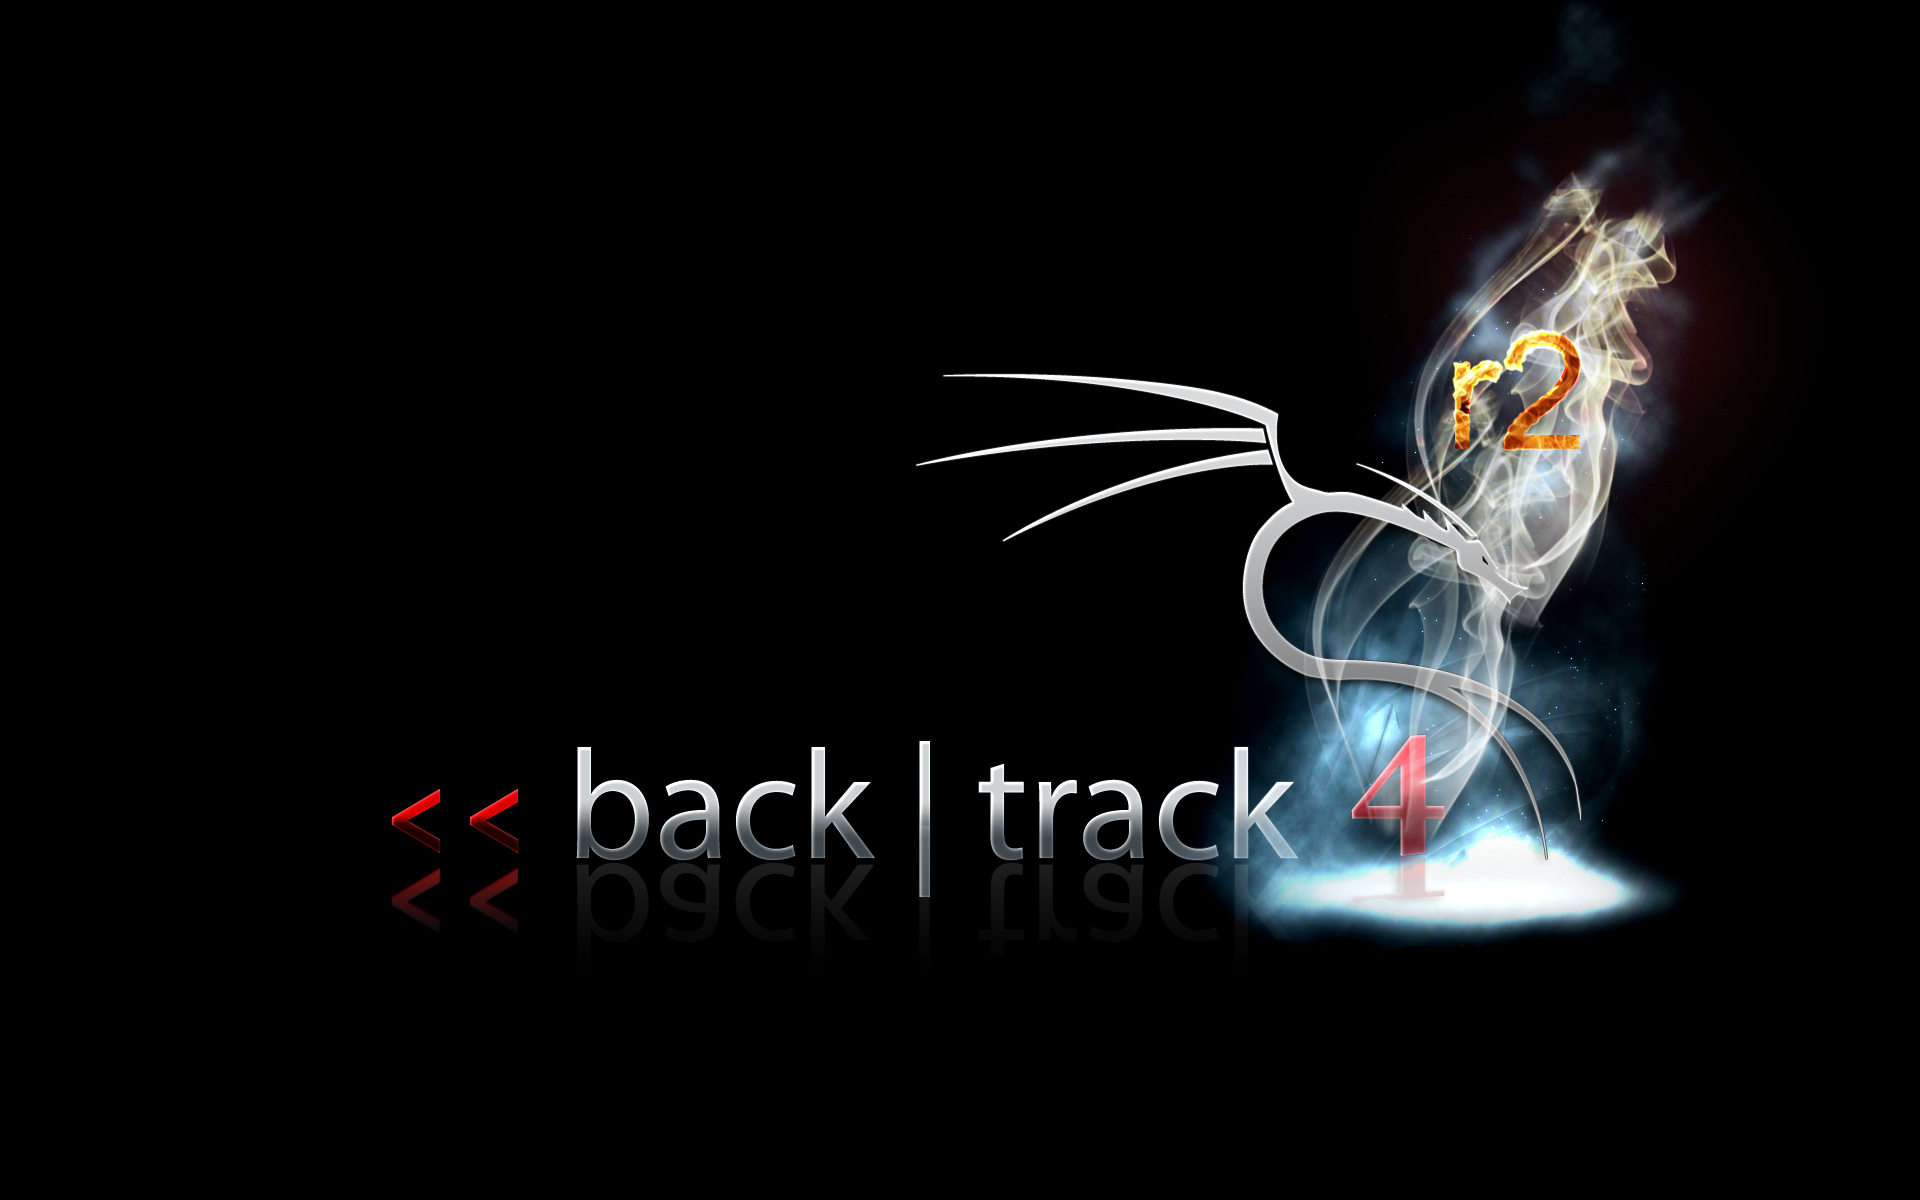 backtrack-4r2.png